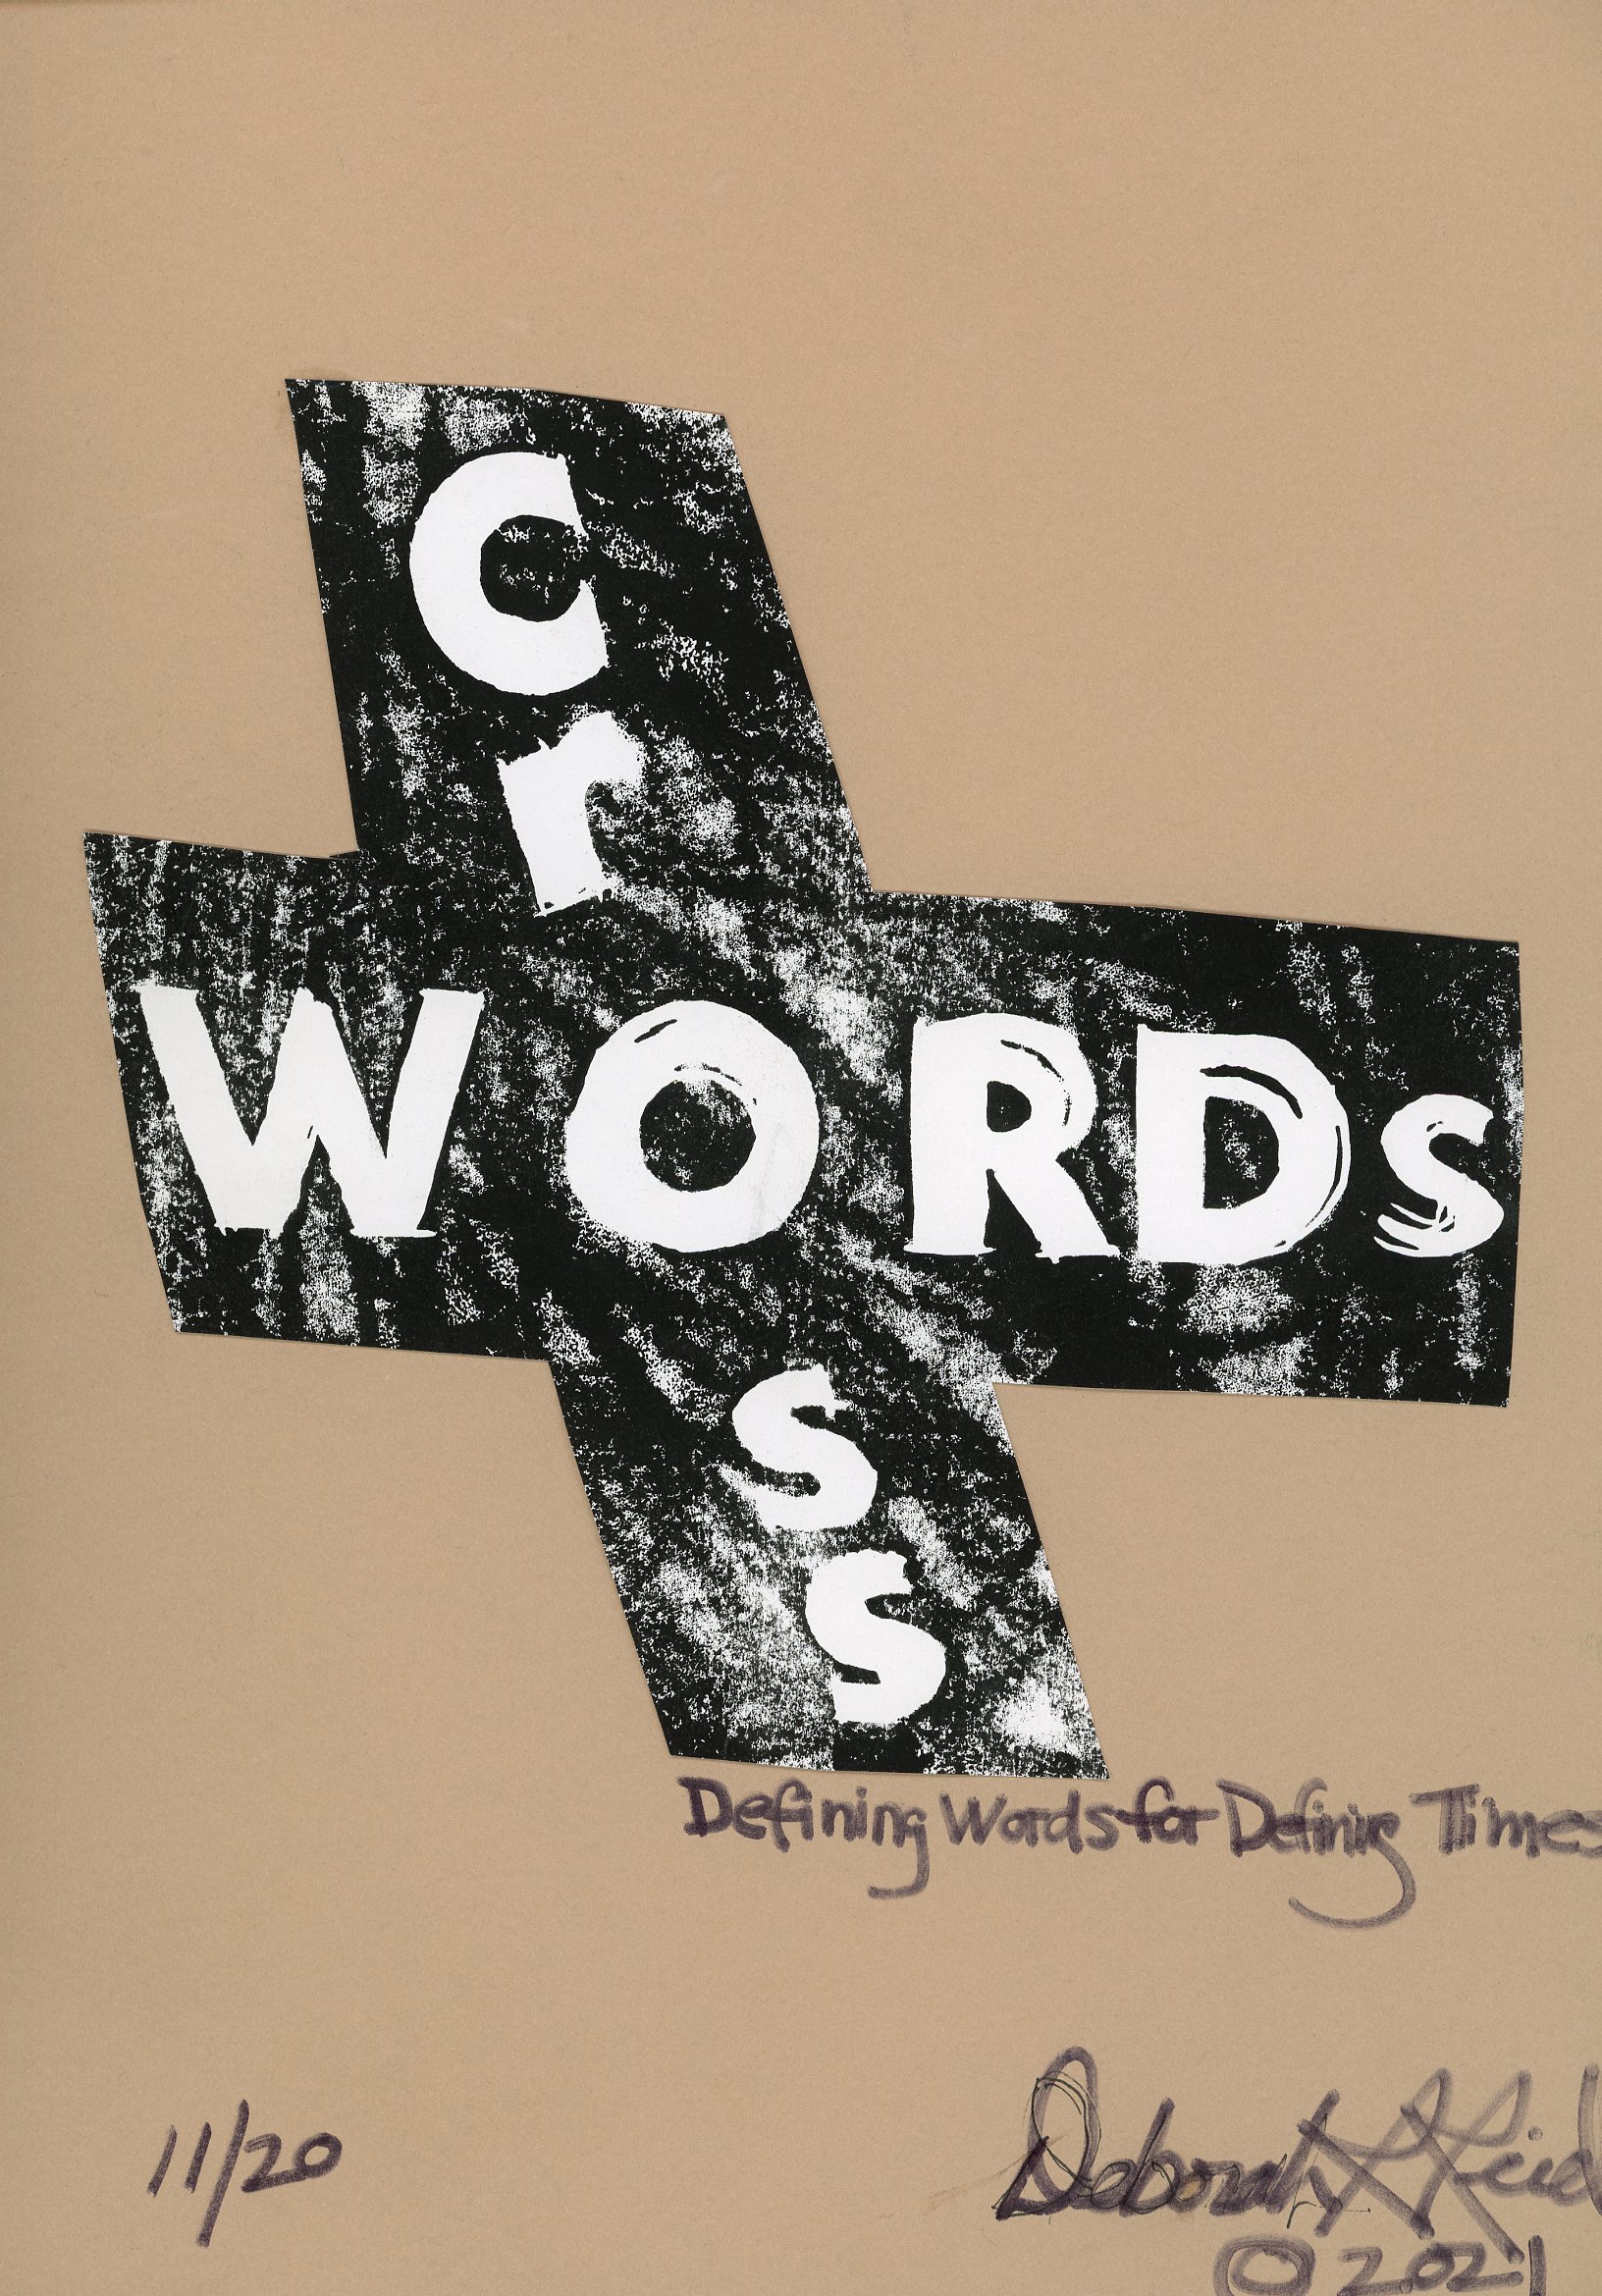 CrossWords: Defining Words for Defining Times, Deborah Reid